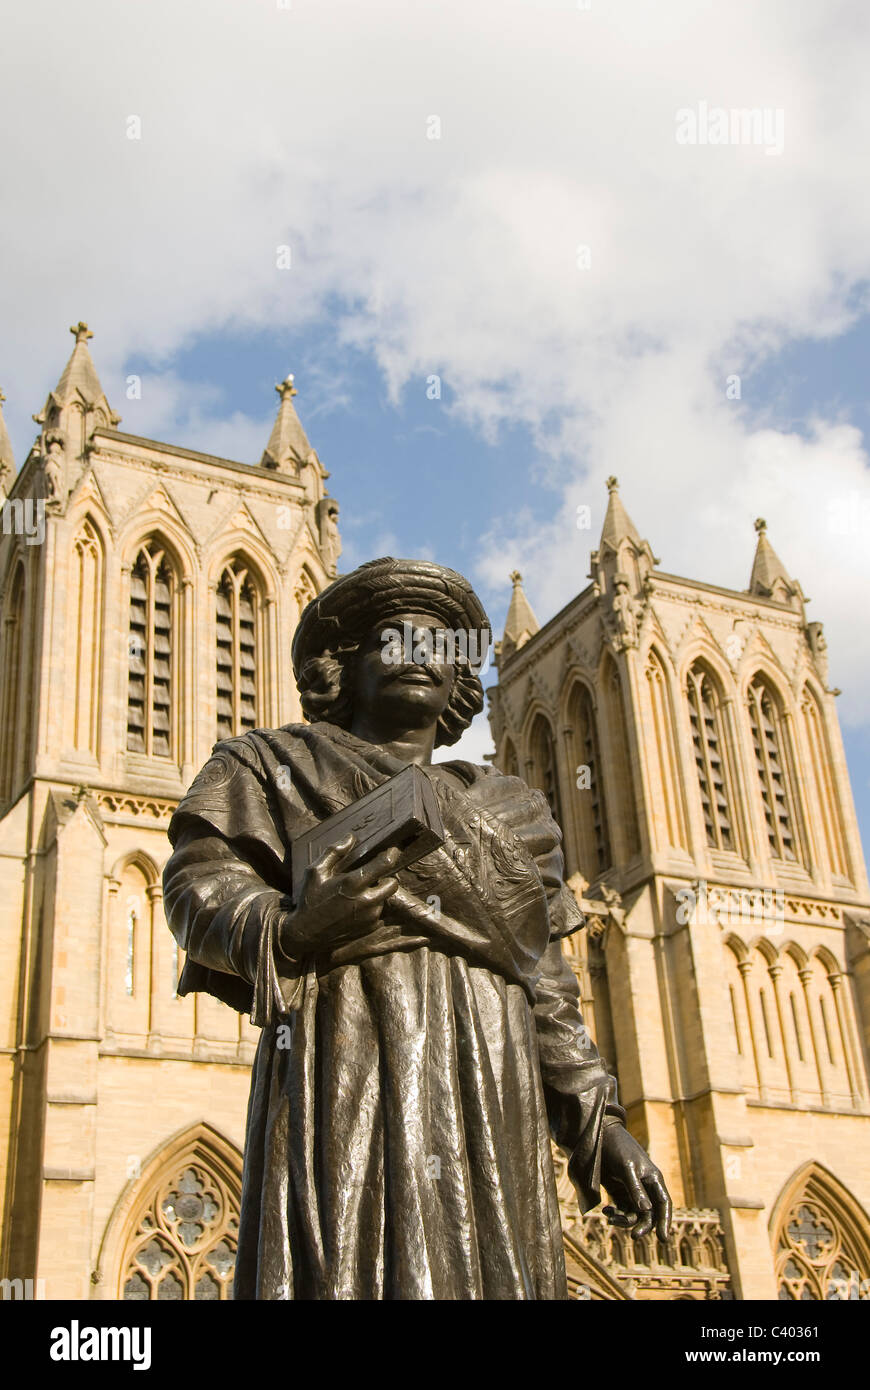 Statue de Raja Rammohun Roy en face de la cathédrale de Bristol, College Green, Bristol, England, UK Banque D'Images